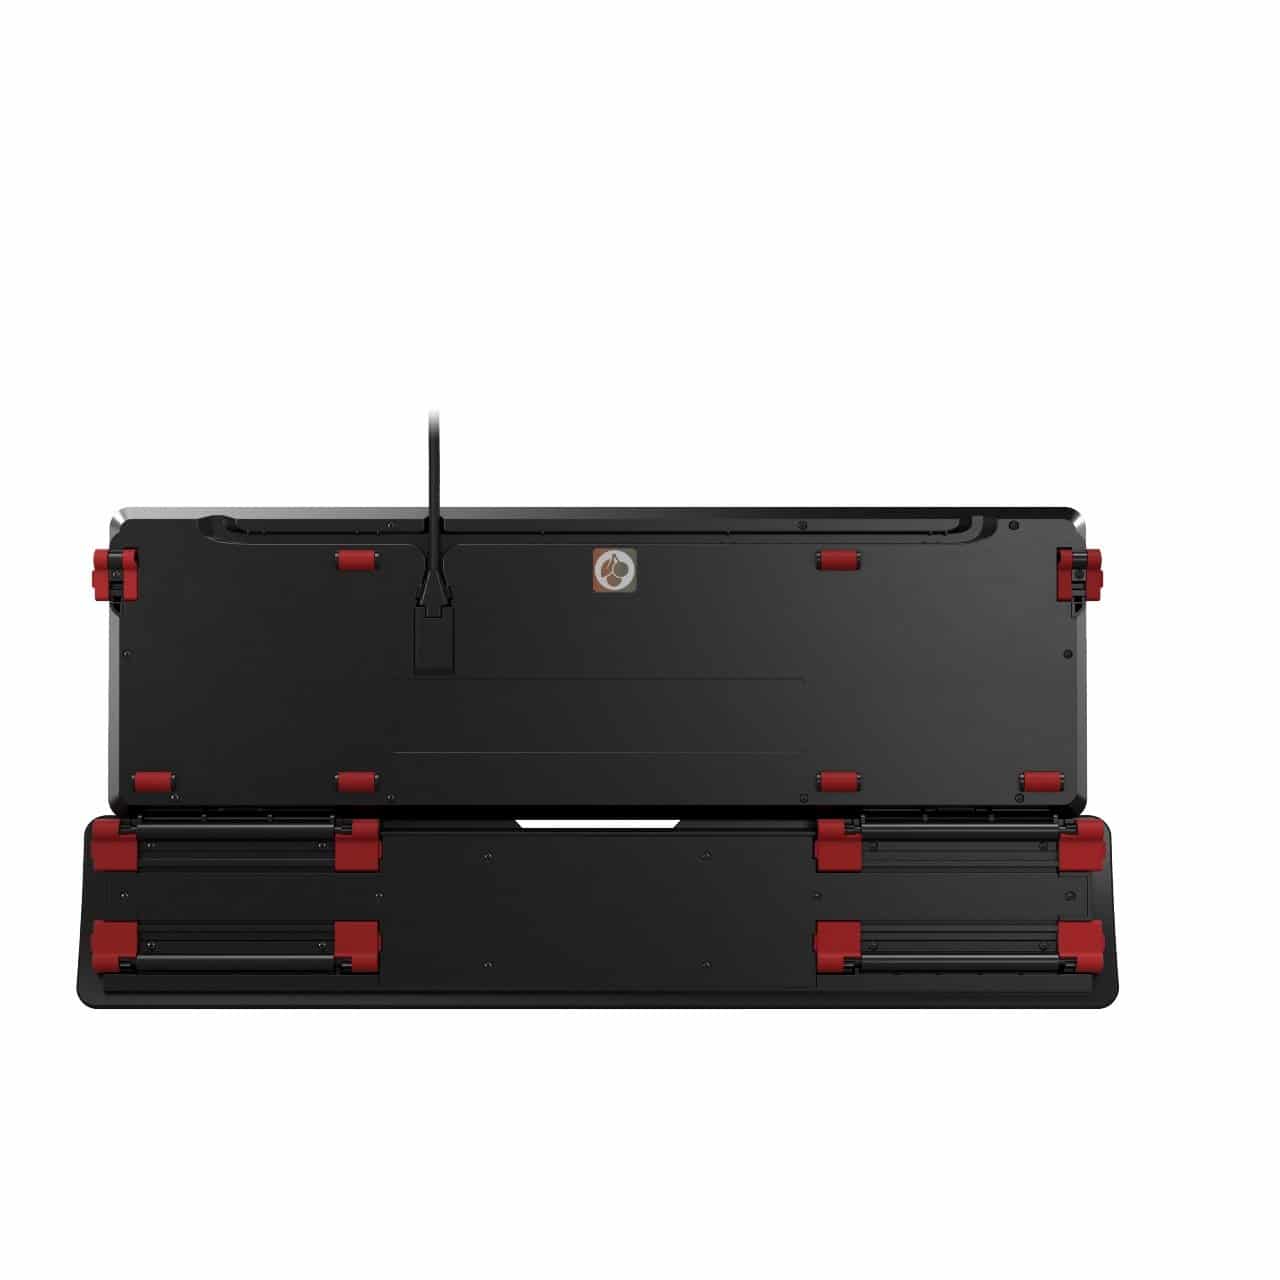 Image 14 : Cherry MX Board 5.0 : clavier mécanique silencieux et ergonomique pour gamers